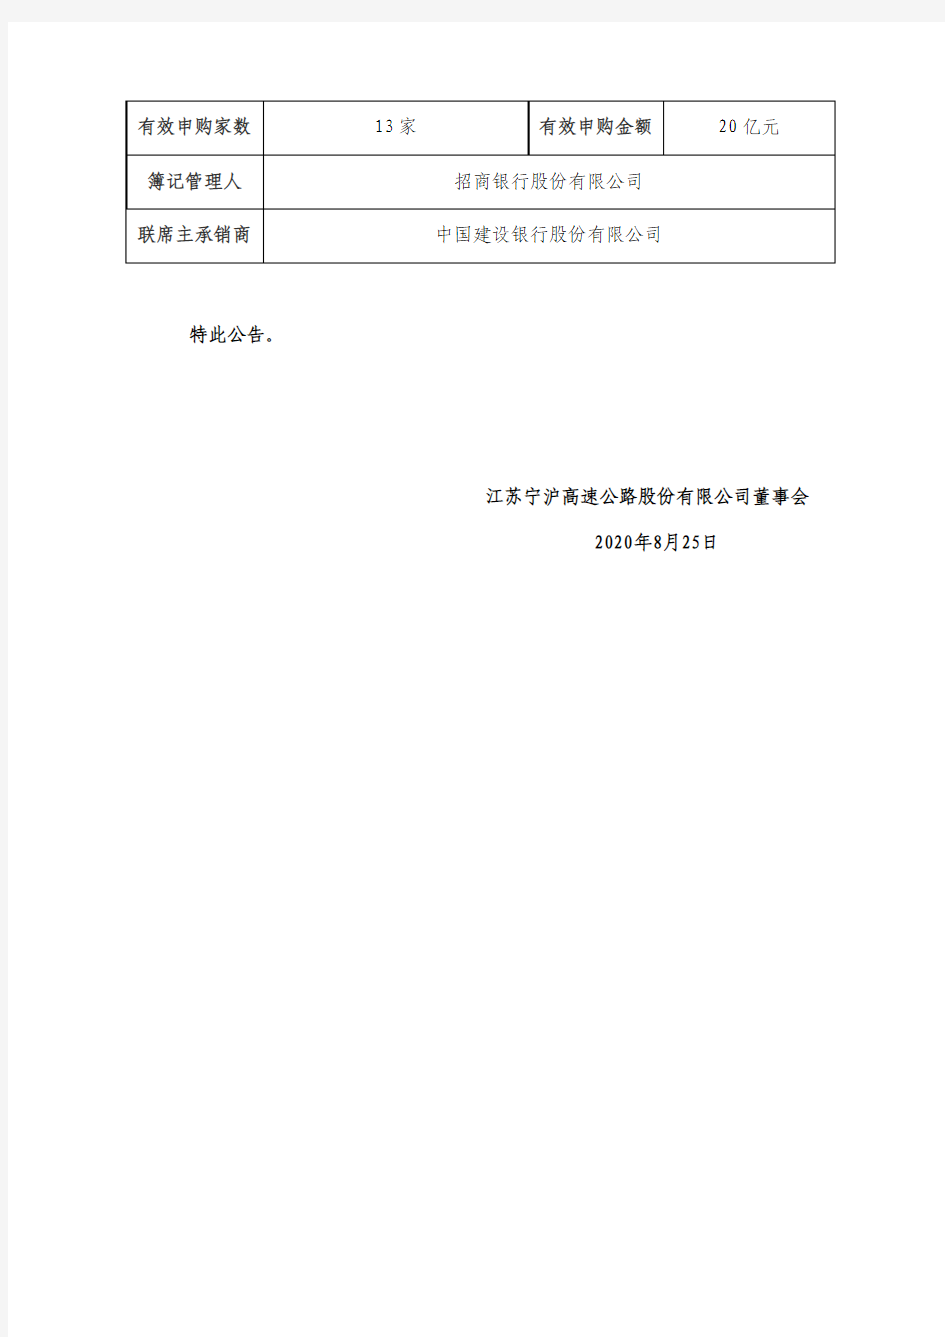 宁沪高速2020年度第一期中期票据发行情况公告